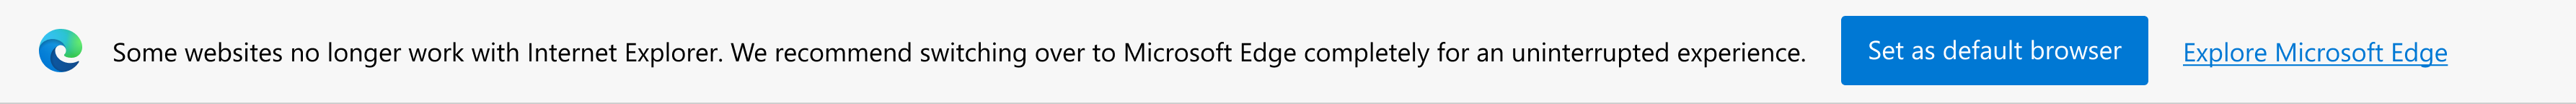 最新のサイトに関する通知と、Microsoft Edge を既定のブラウザーとして設定するか、Microsoft Edge を探索するように求めるメッセージ